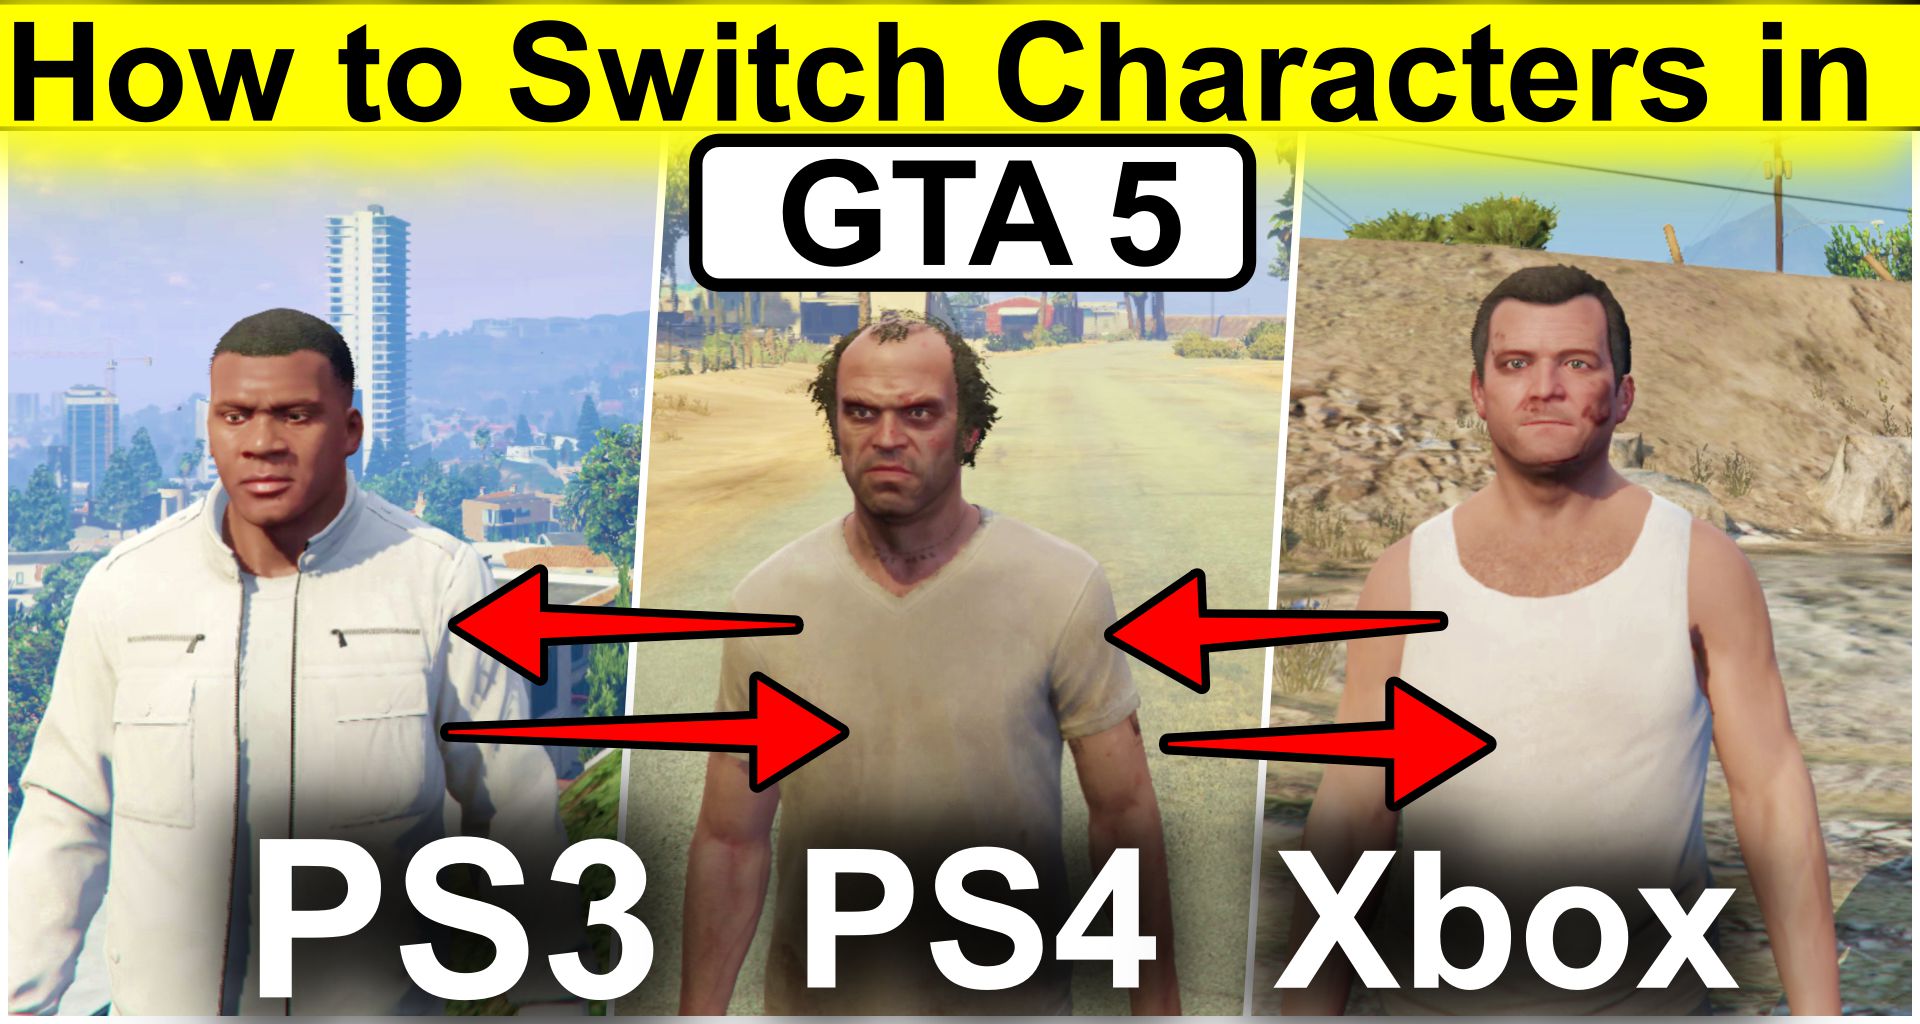 Vernietigen mezelf onderwerp How to Switch Characters in GTA 5 PS3, PS4, Xbox